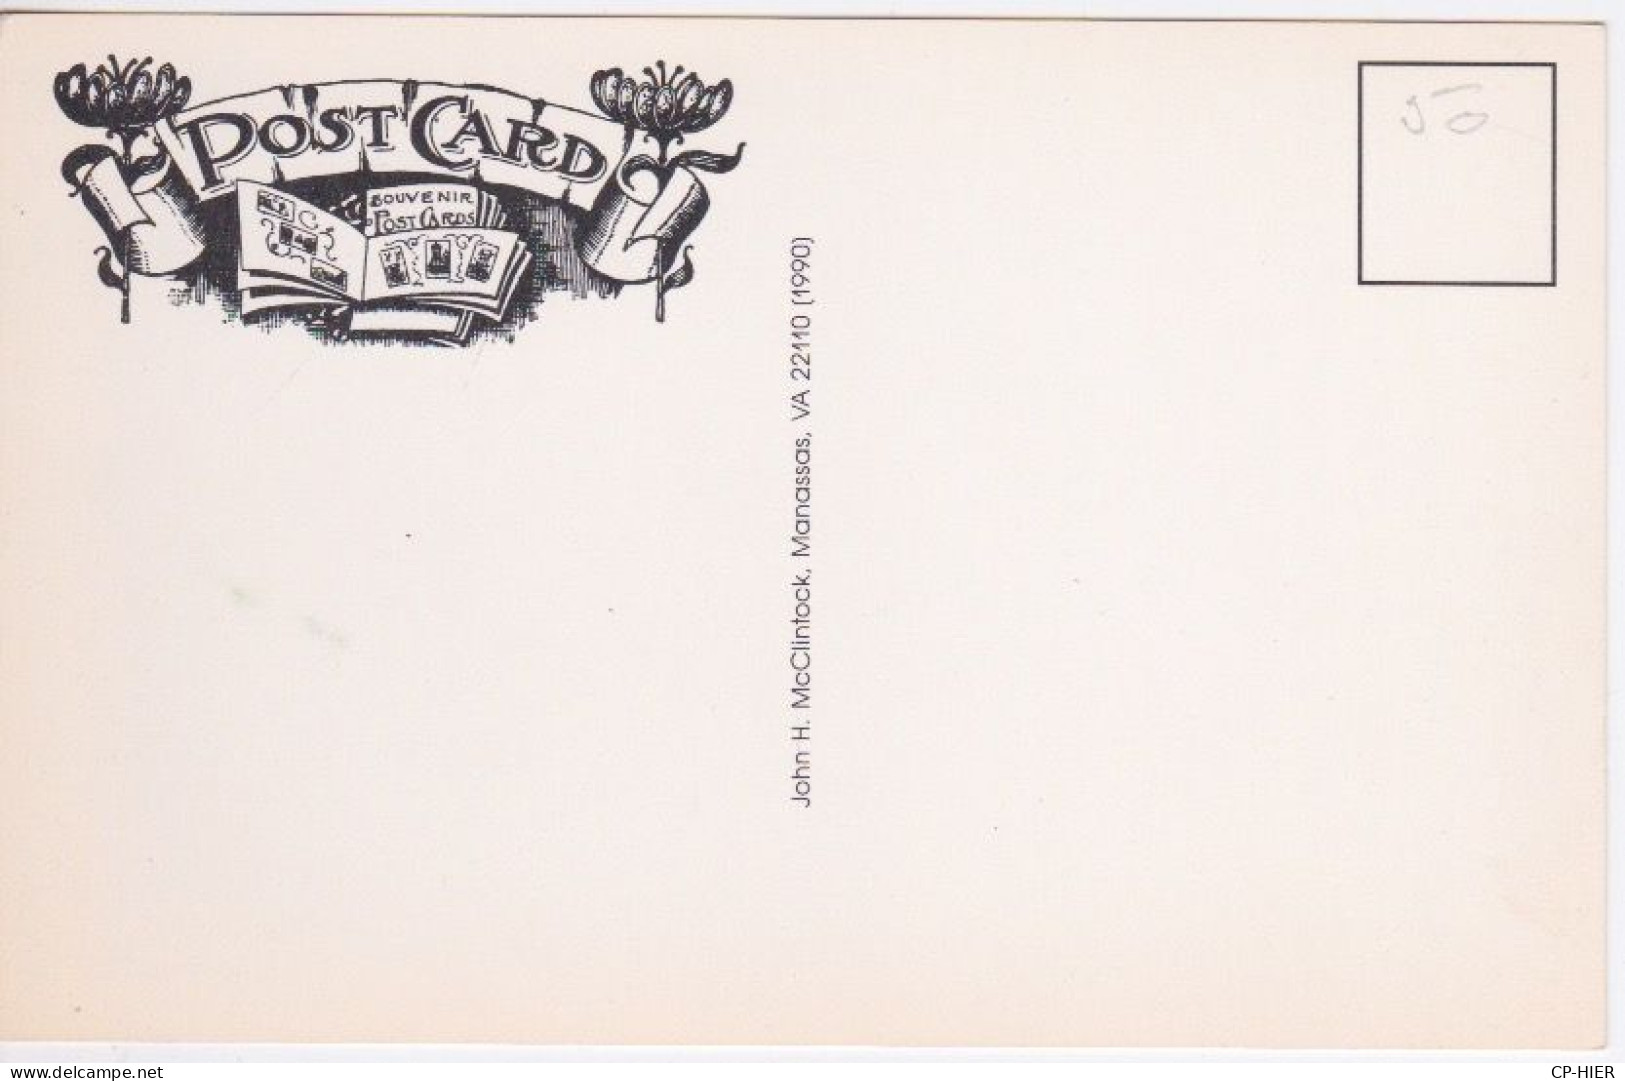 CARTE DE SALON 1991 - POST CARD -  PA  Etats-Unis-Pennsylvania - HUMOUR BICYCLETTE - Sammlerbörsen & Sammlerausstellungen